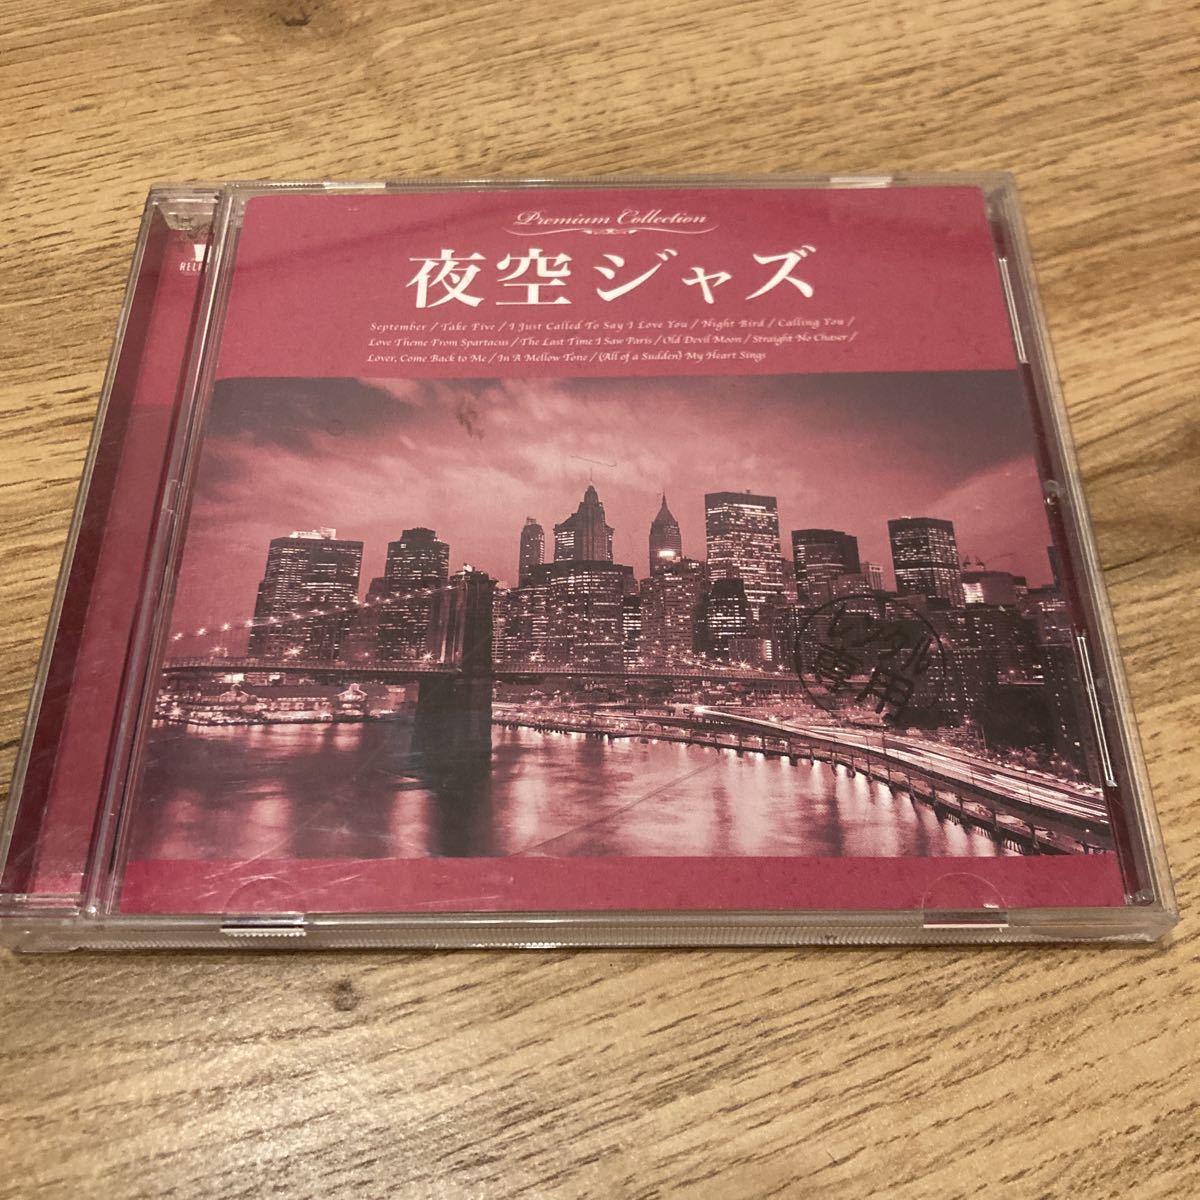  night Jazz,CD, Jazz, compilation album 